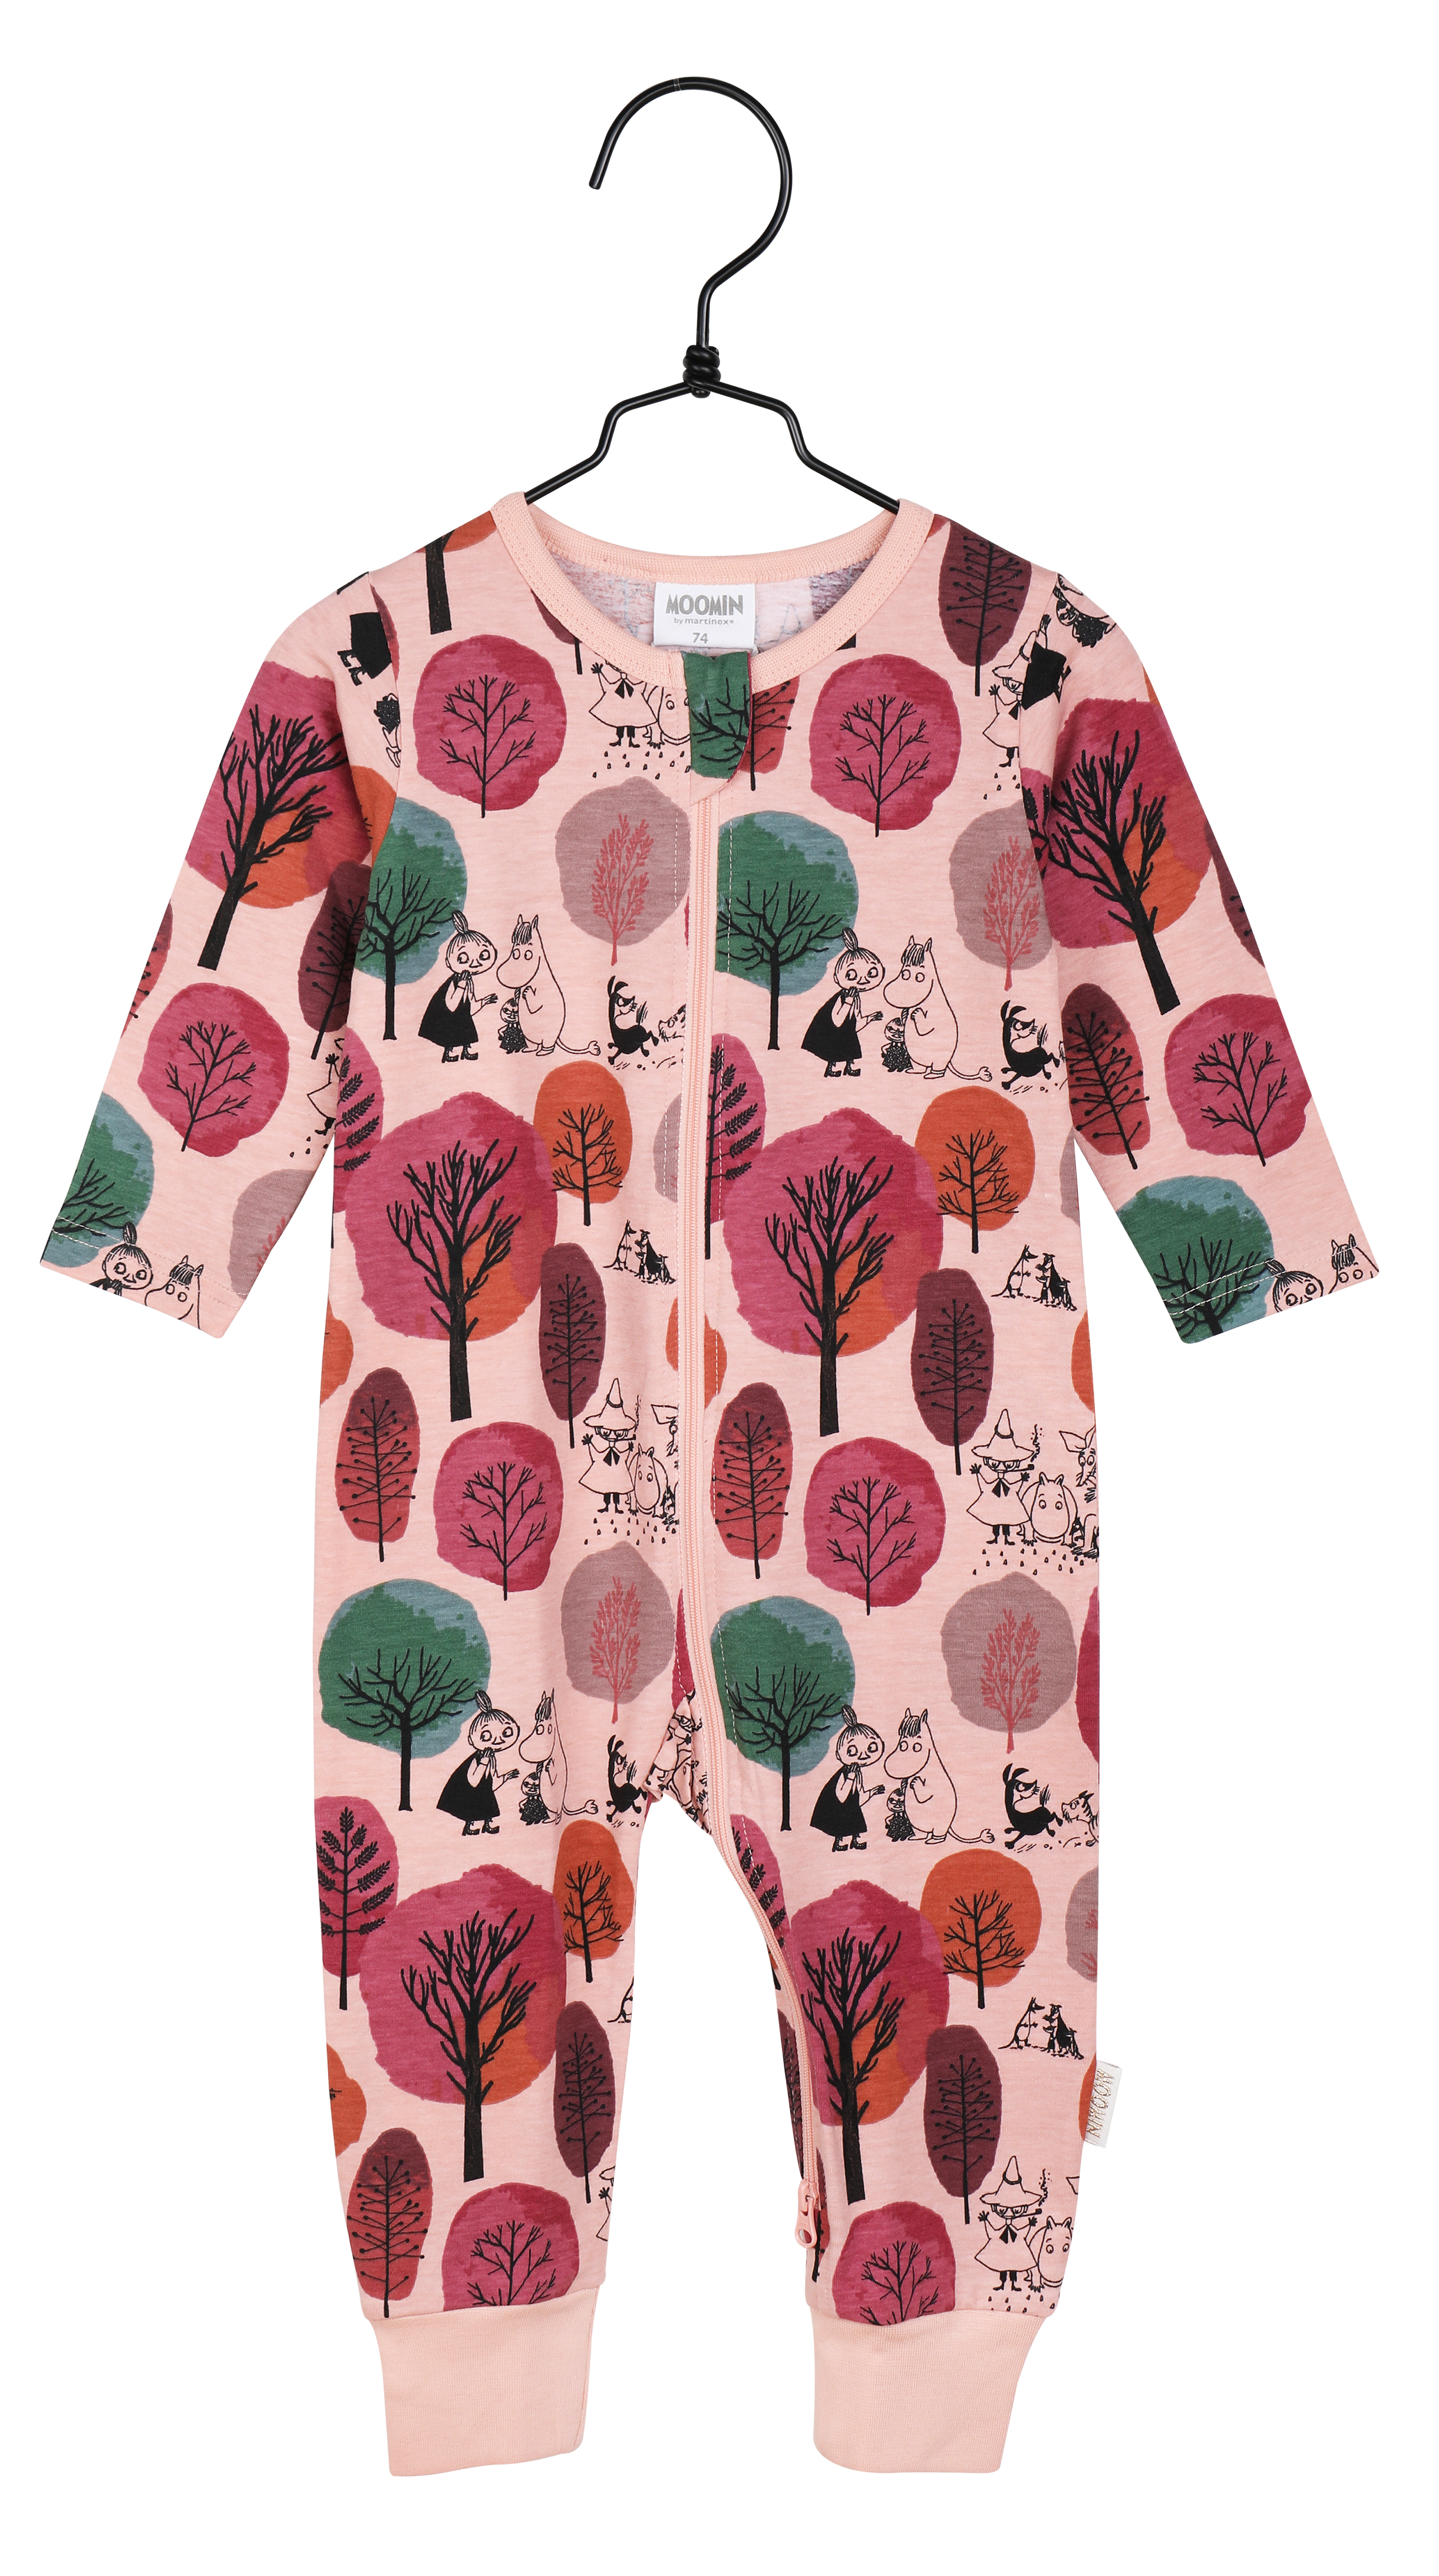 Martinex Moomin Pyjamas Autumn Orchard Rose